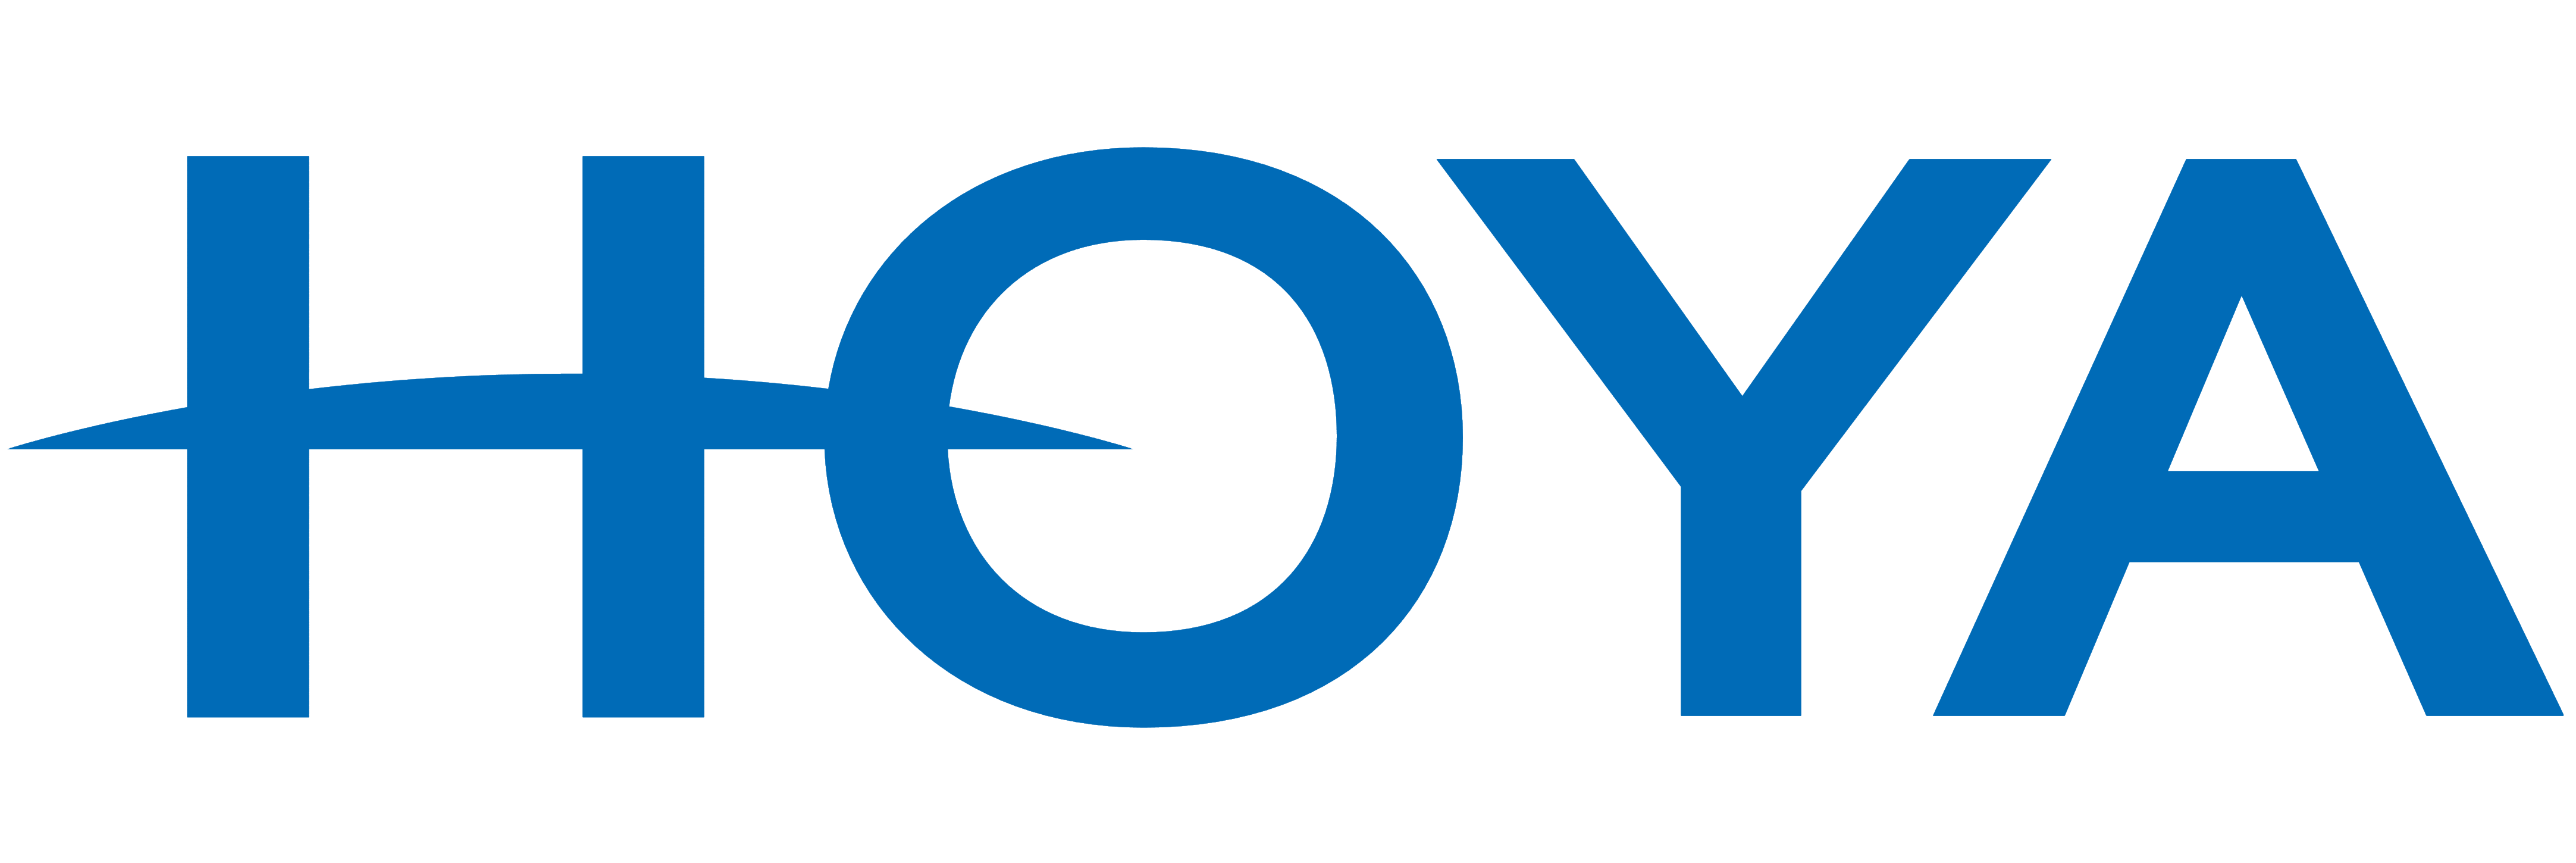 Hoya logo, logotype